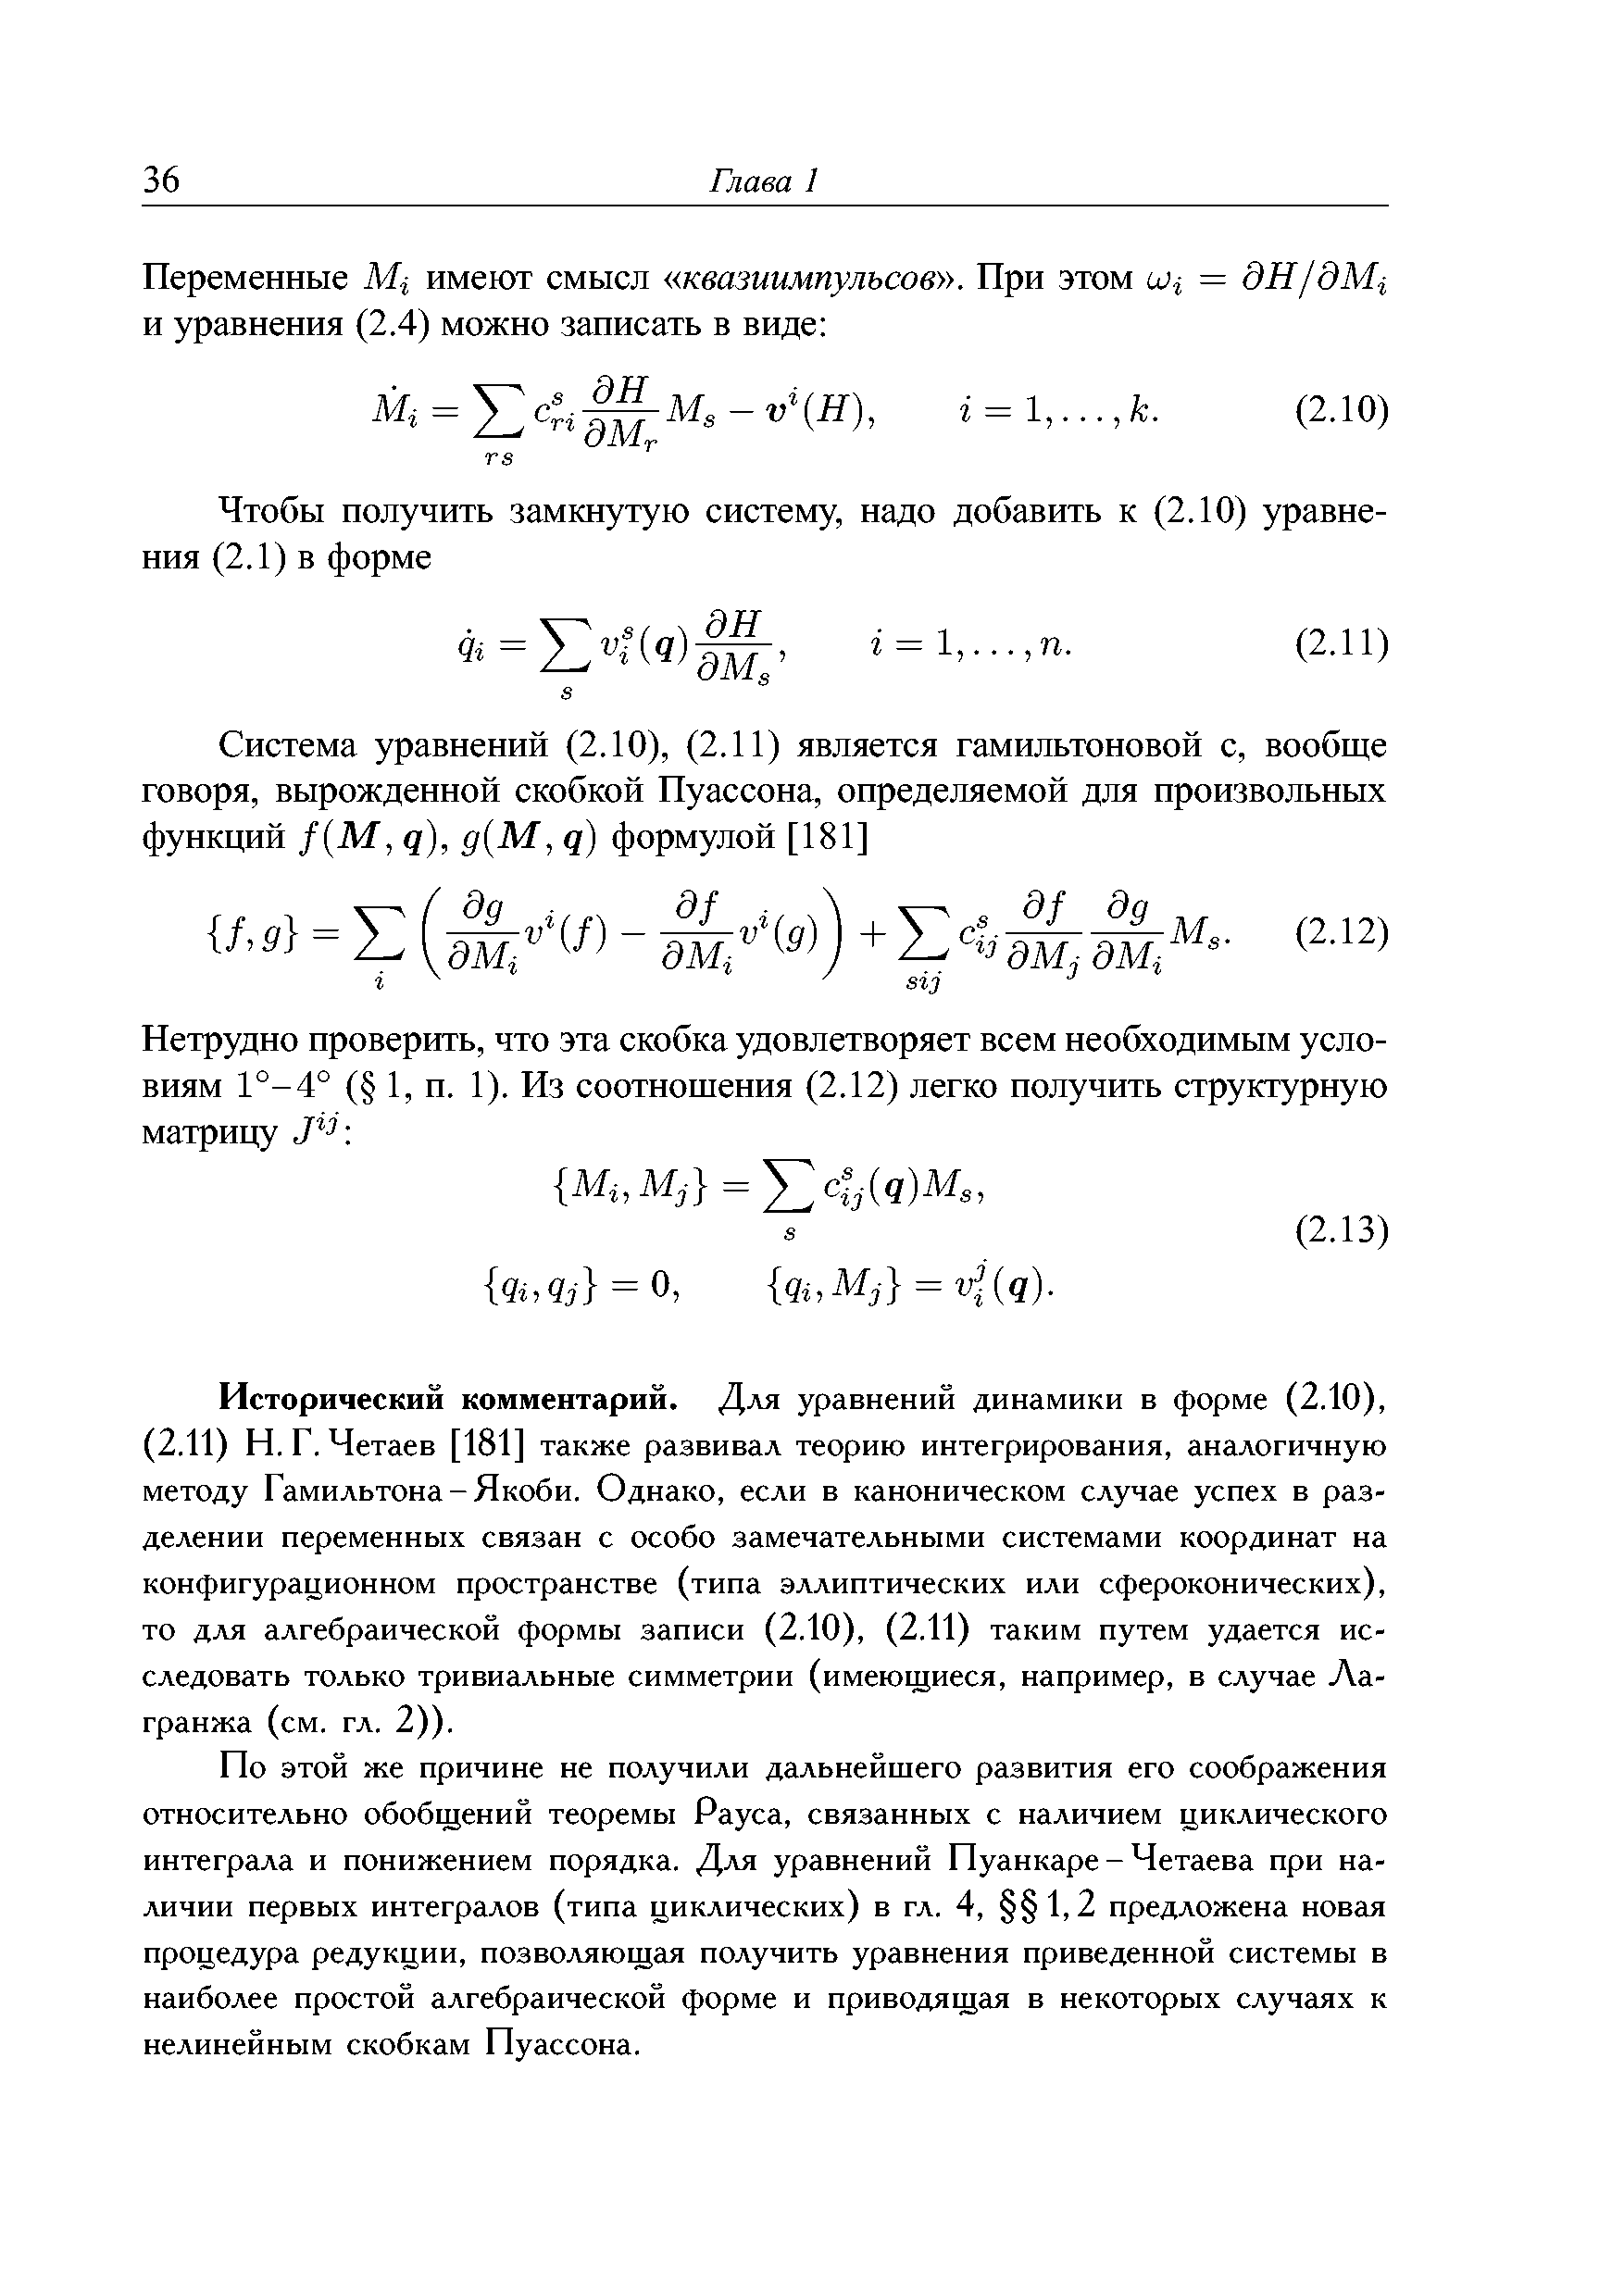 Исторический комментарий. Для уравнений динамики в форме (2.10), (2.11) Н. Г. Четаев [181] также развивал теорию интегрирования, аналогичную методу Гамильтона-Якоби. Однако, если в каноническом случае успех в разделении переменных связан с особо замечательными системами координат на конфигурационном пространстве (типа эллиптических или сфероконических), то для алгебраической формы записи (2.10), (2.11) таким путем удается исследовать только тривиальные симметрии (имеющиеся, например, в случае Лагранжа (см. гл. 2)).
